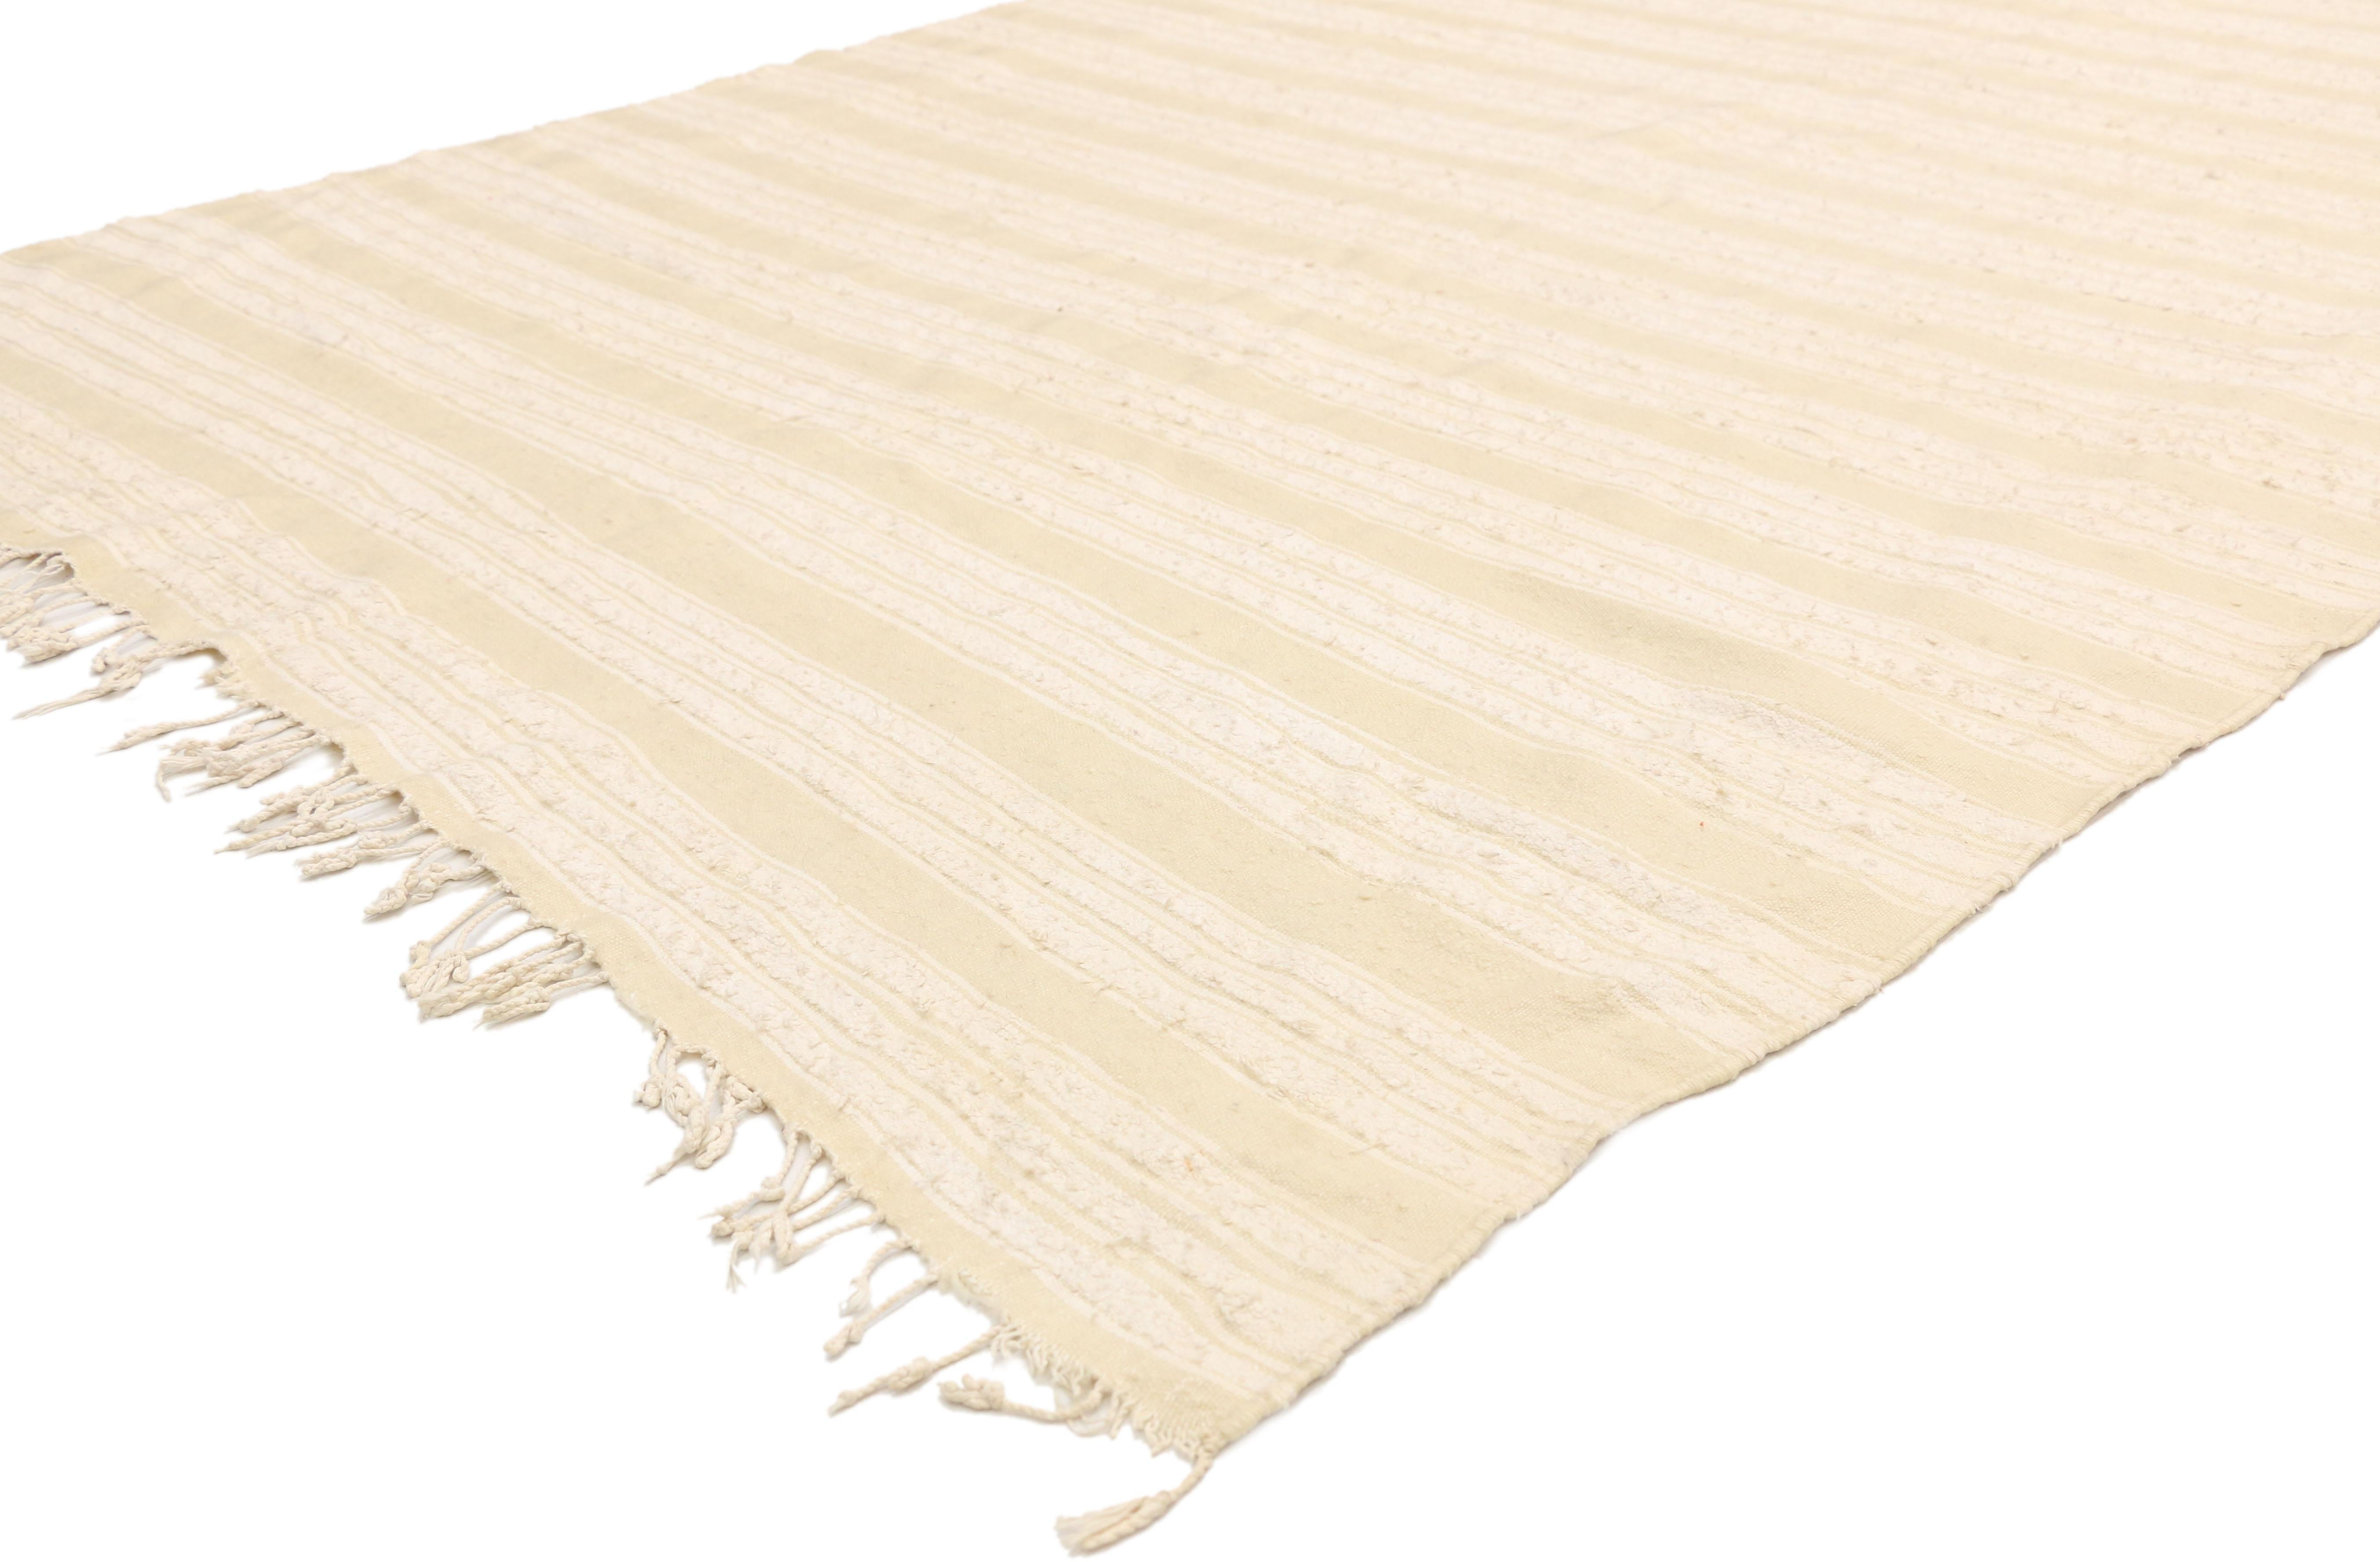 20828 Vintage marokkanischen Kilim Teppich mit minimalistischen skandinavischen Stil, neutrale Farbe Teppich 04'08 x 09'07. Dieser neutrale, flachgewebte Kilim-Teppich strahlt Funktion und Vielseitigkeit mit entspannter Hygge-Atmosphäre aus. Dieser